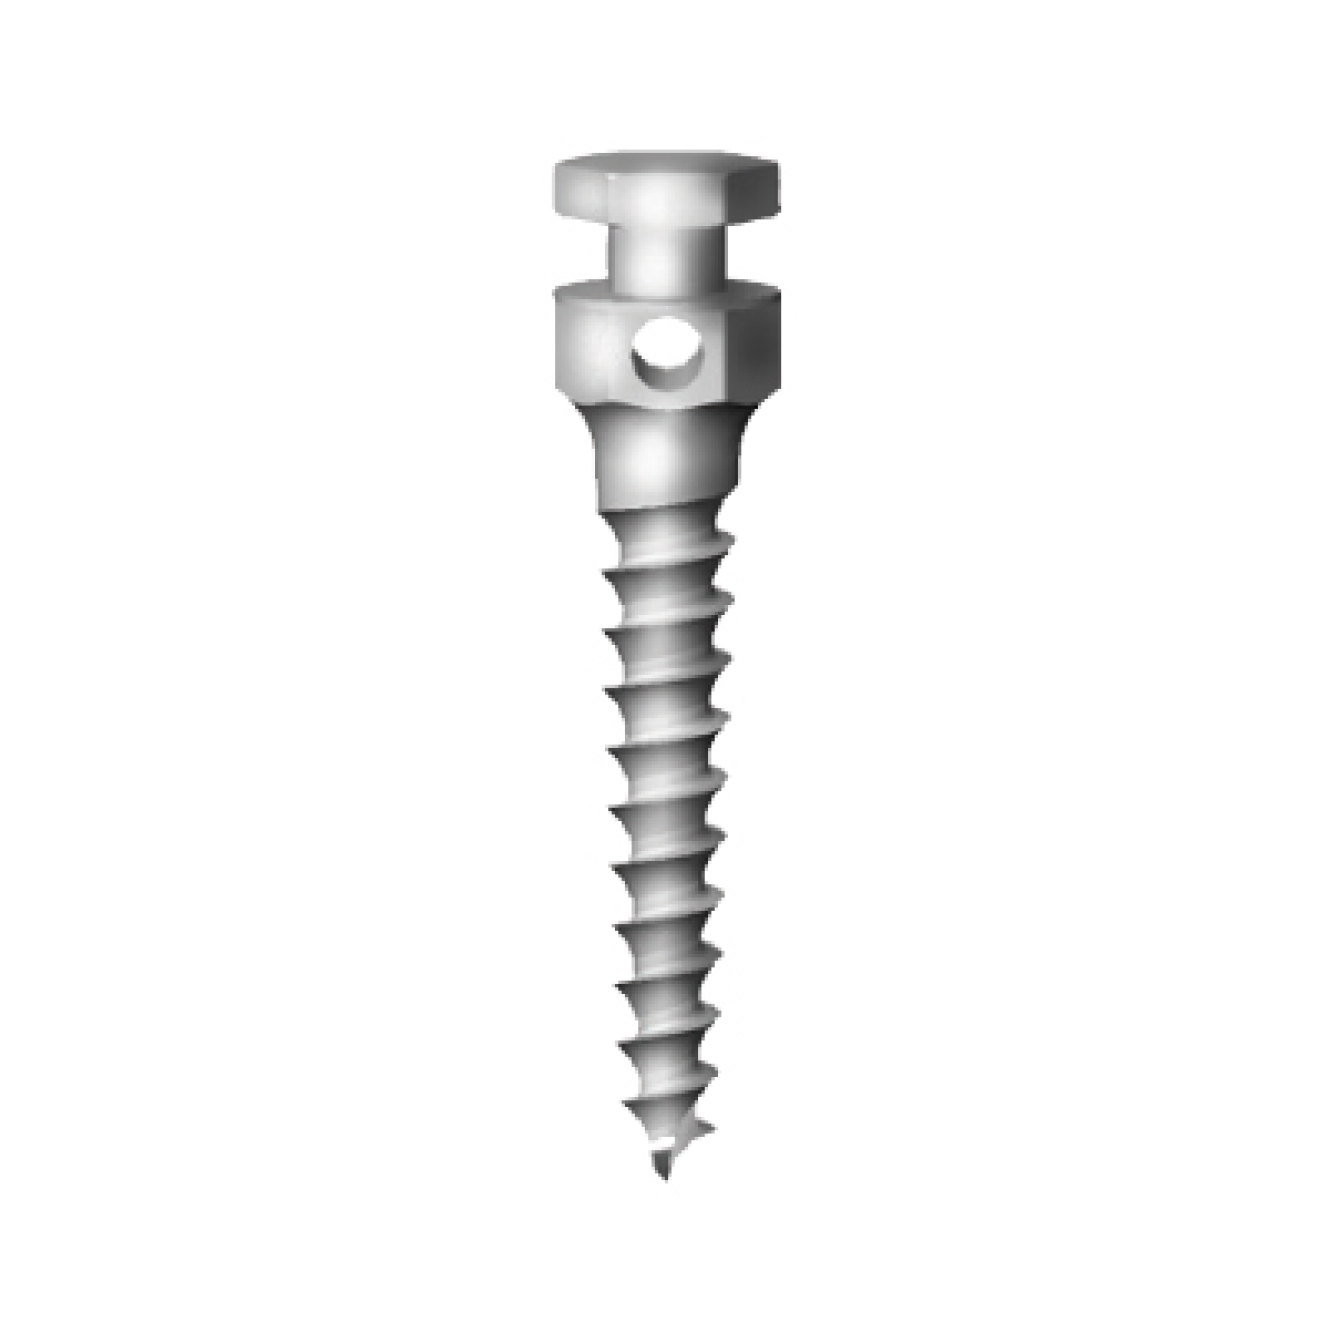 OS-L-20-008 Стоматологический ортодонтический винт для эластичной тяги и проволоки, диаметр 1.8 мм, длина 8 мм, Mr.Curette Tech, Южная Корея